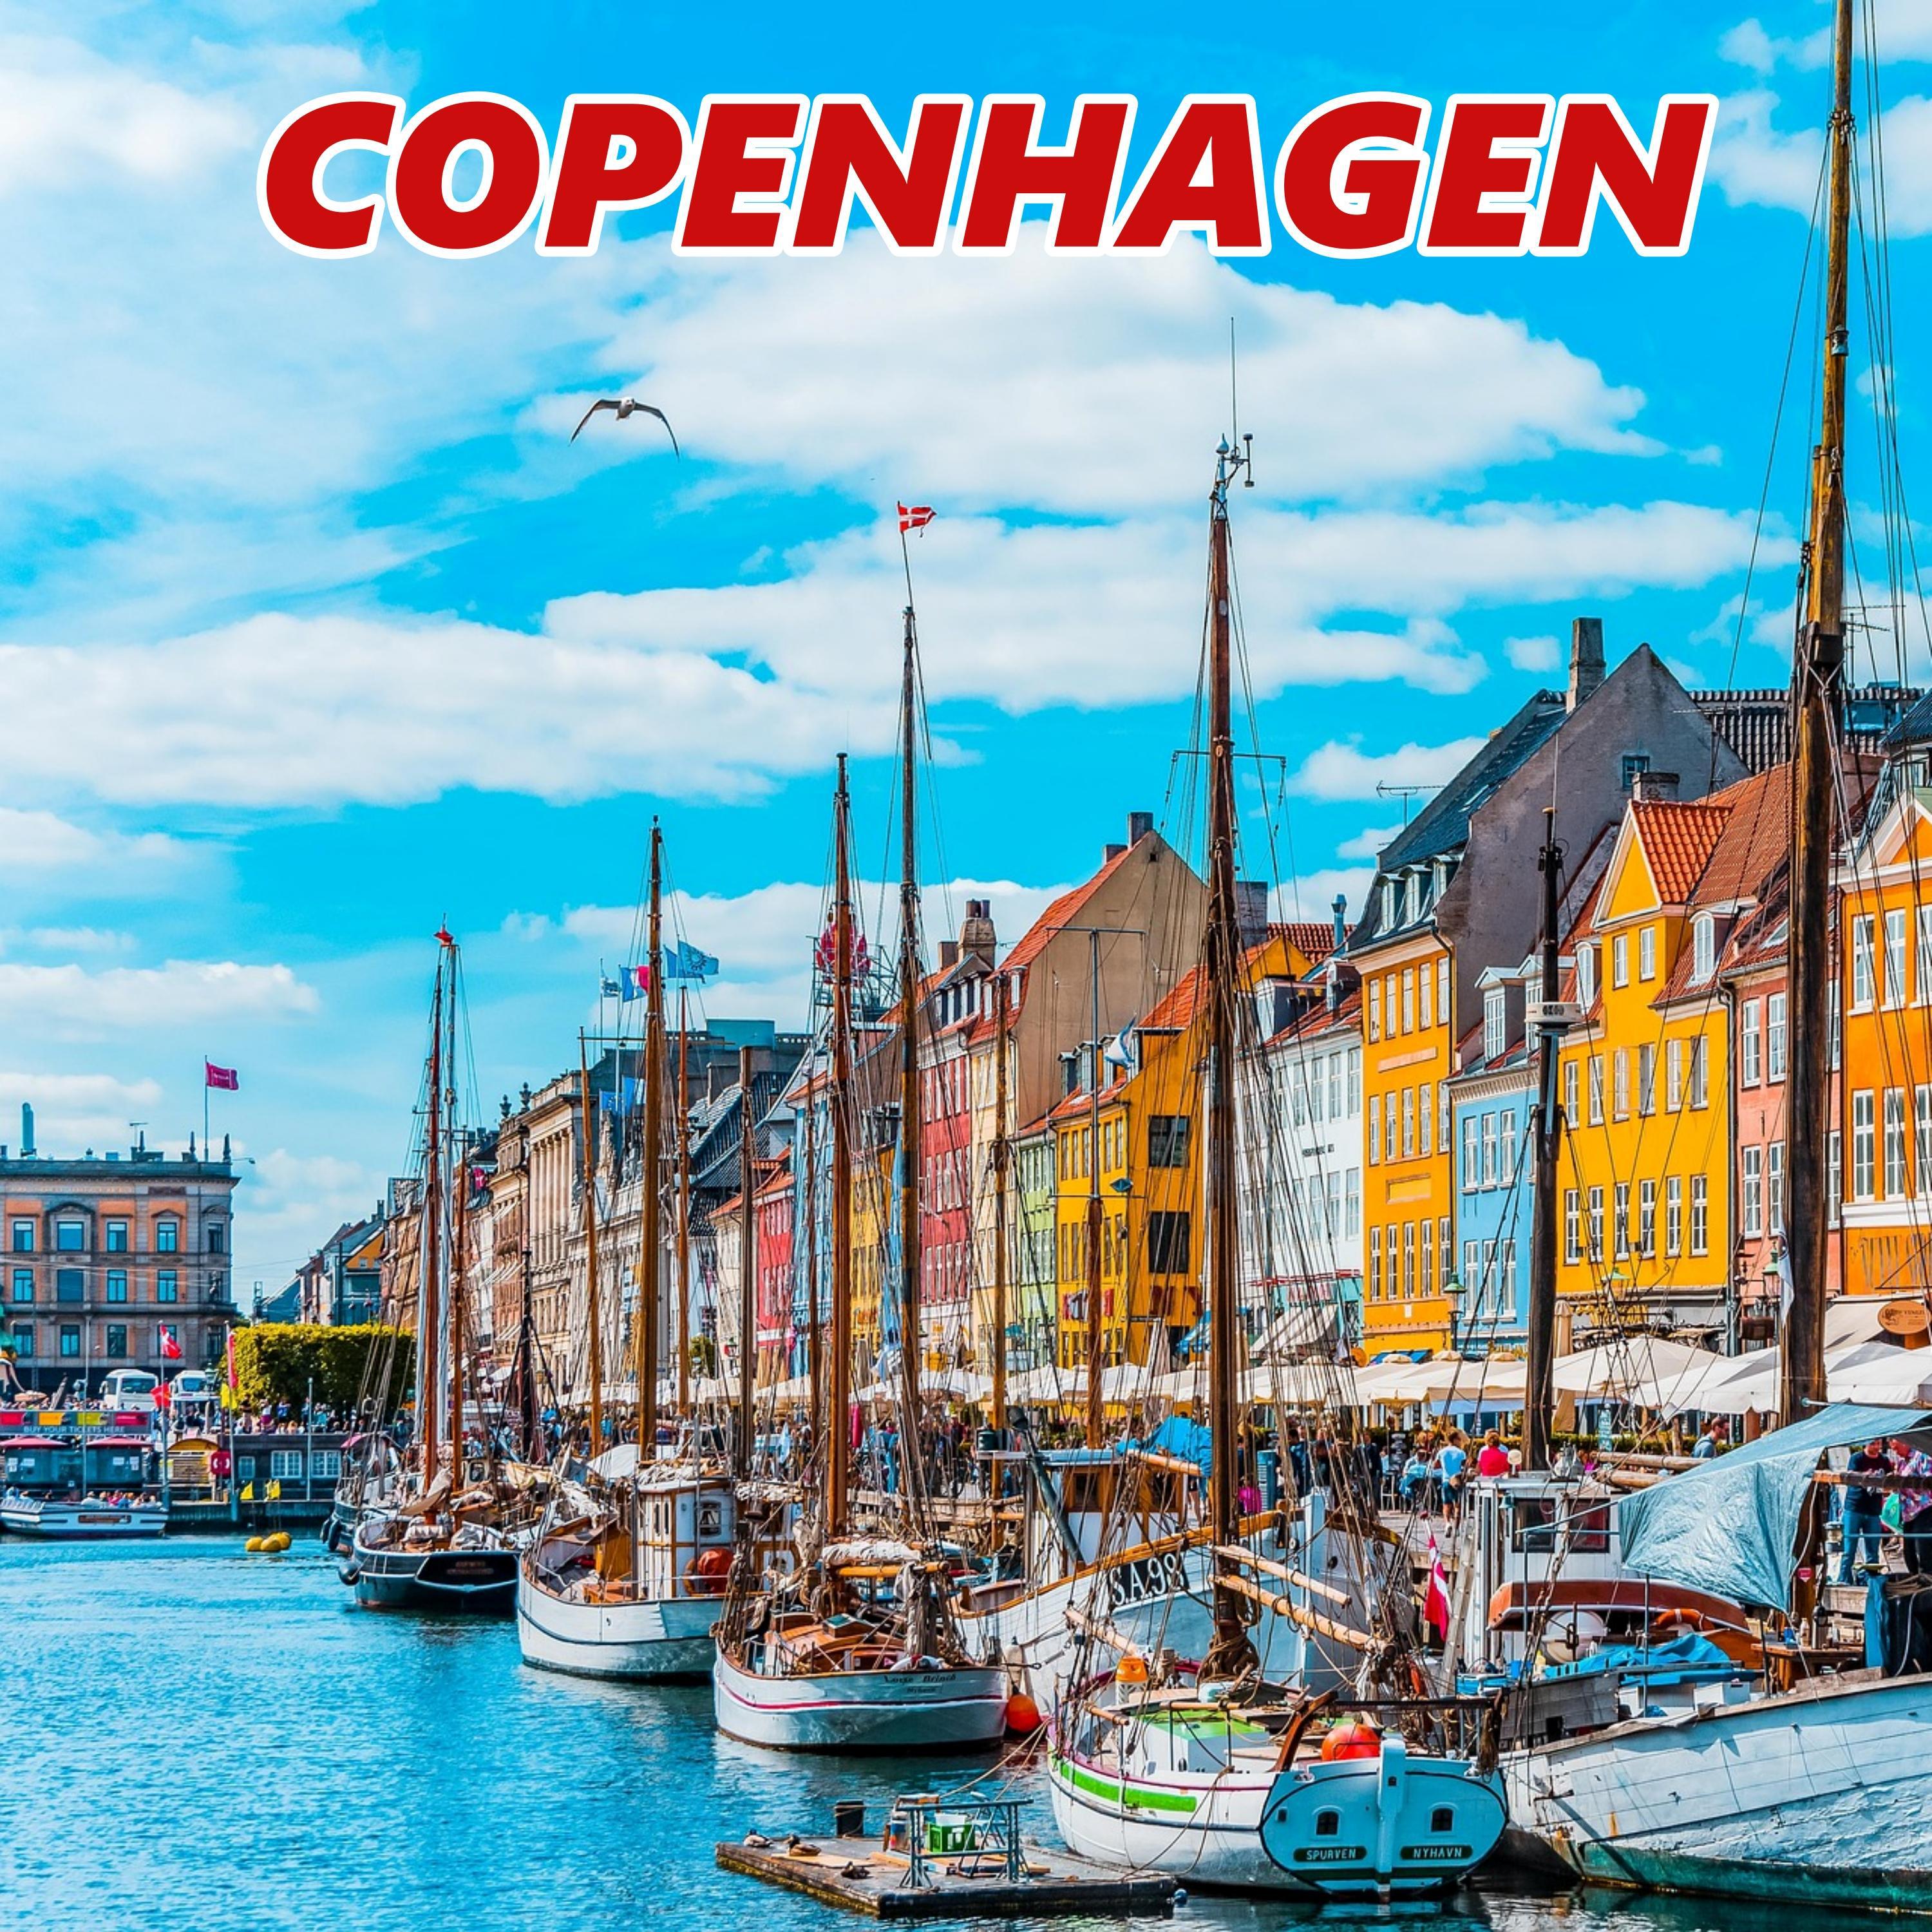 6T6 - Copenhagen (feat. Skeng, Najeeriii, Big Smoak & i-genius)